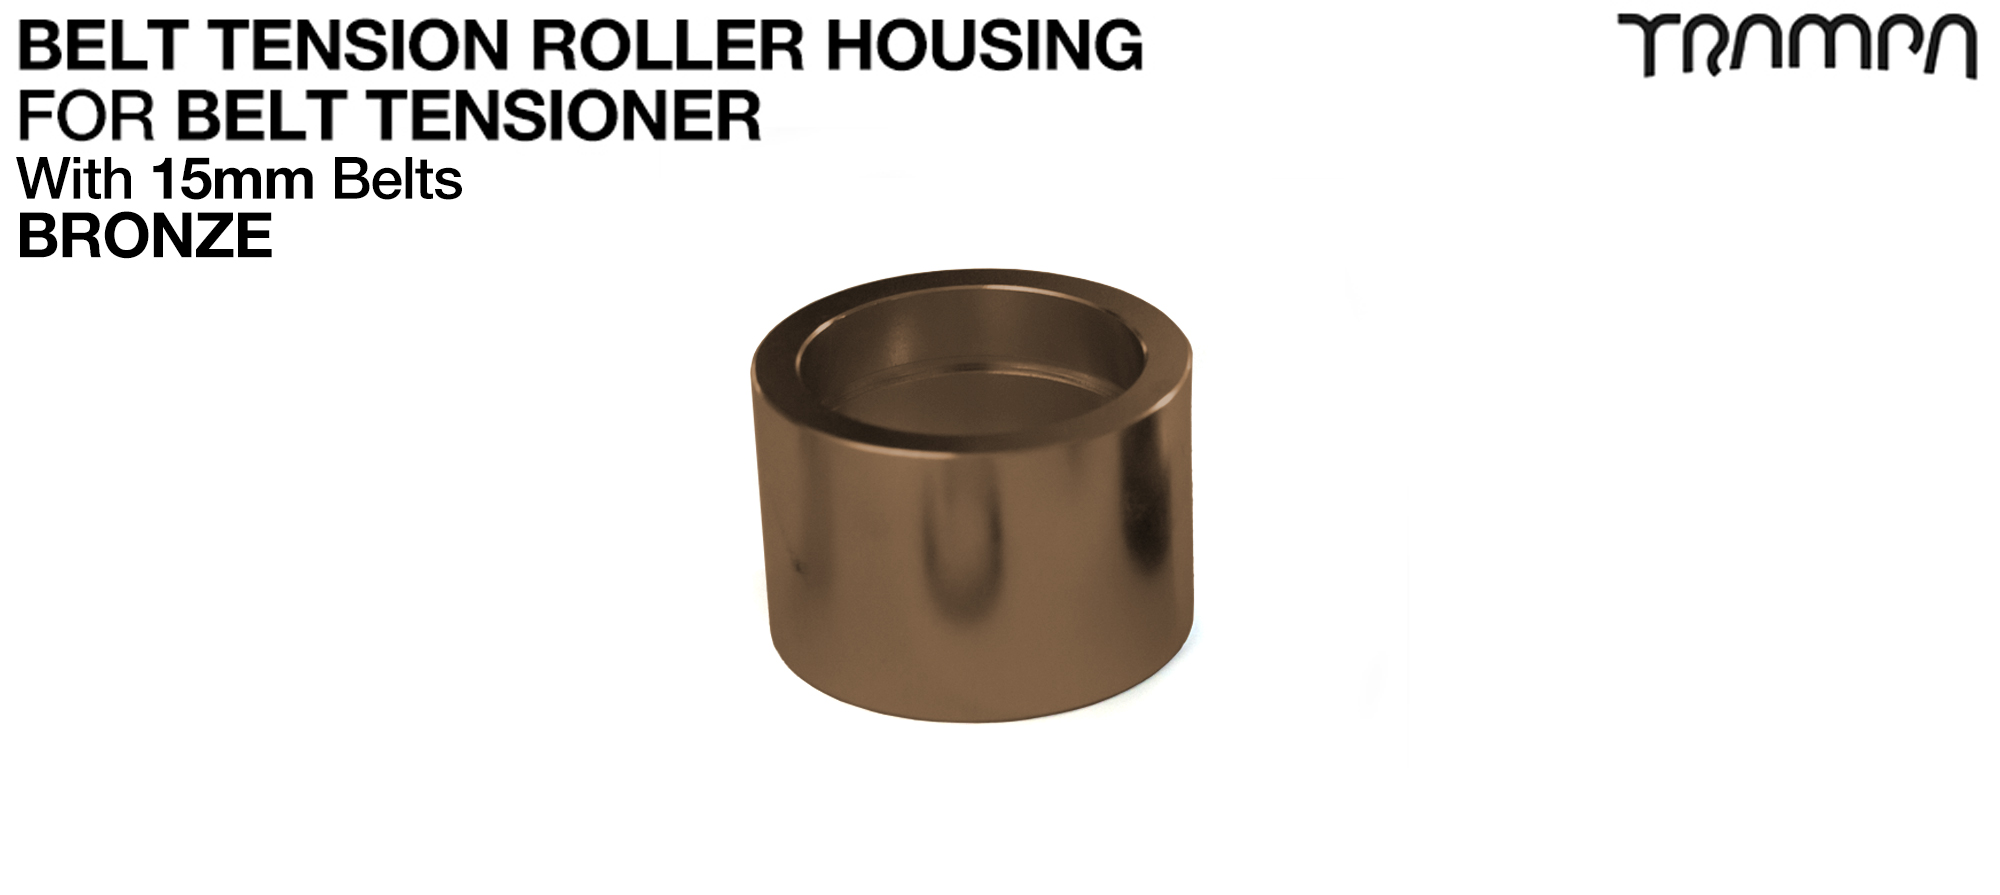 Belt Tension Roller Housing for 15mm Belts - BRONZE